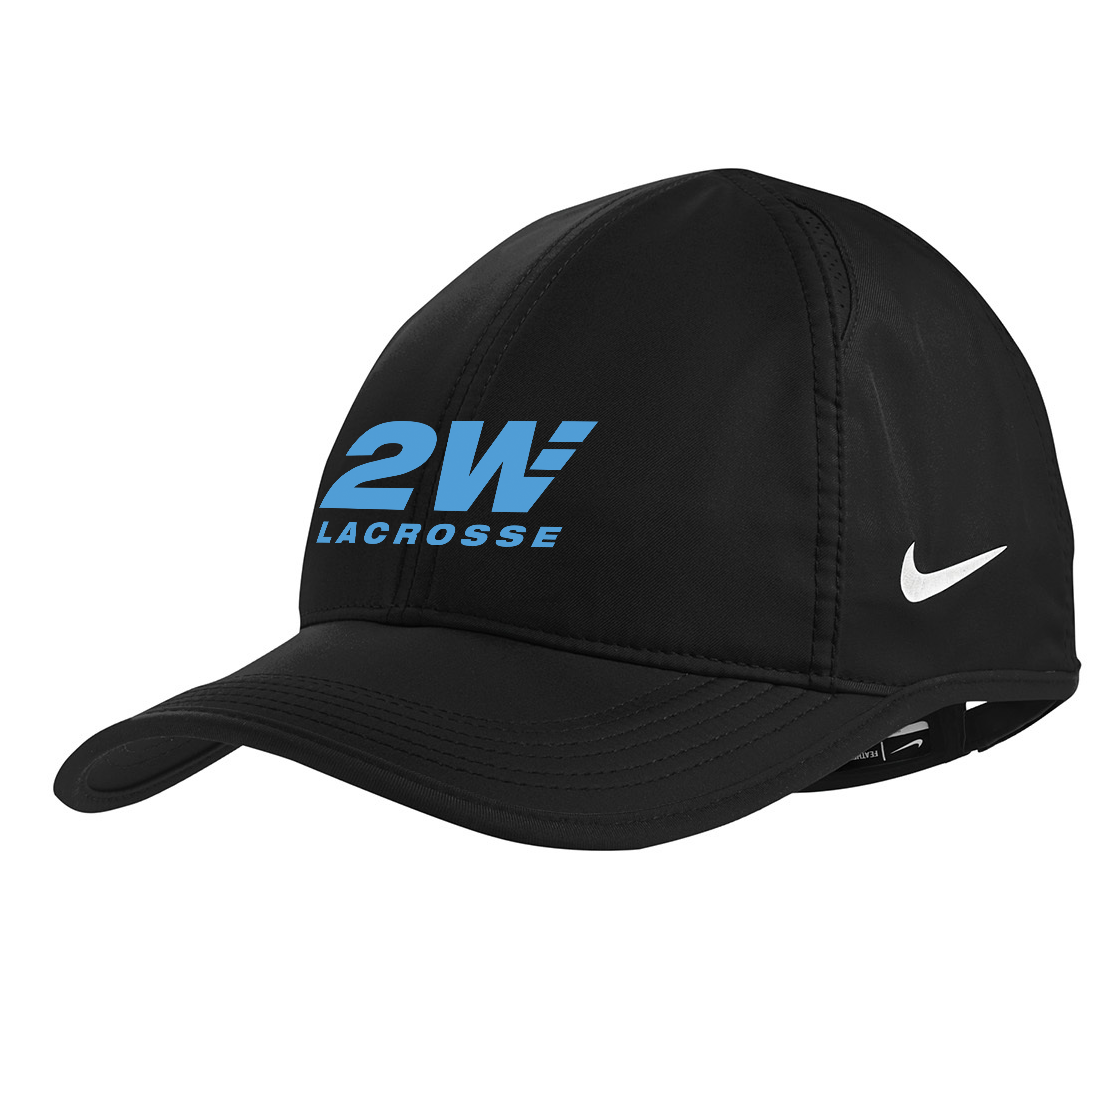 2Way Lacrosse Nike Featherlight Cap